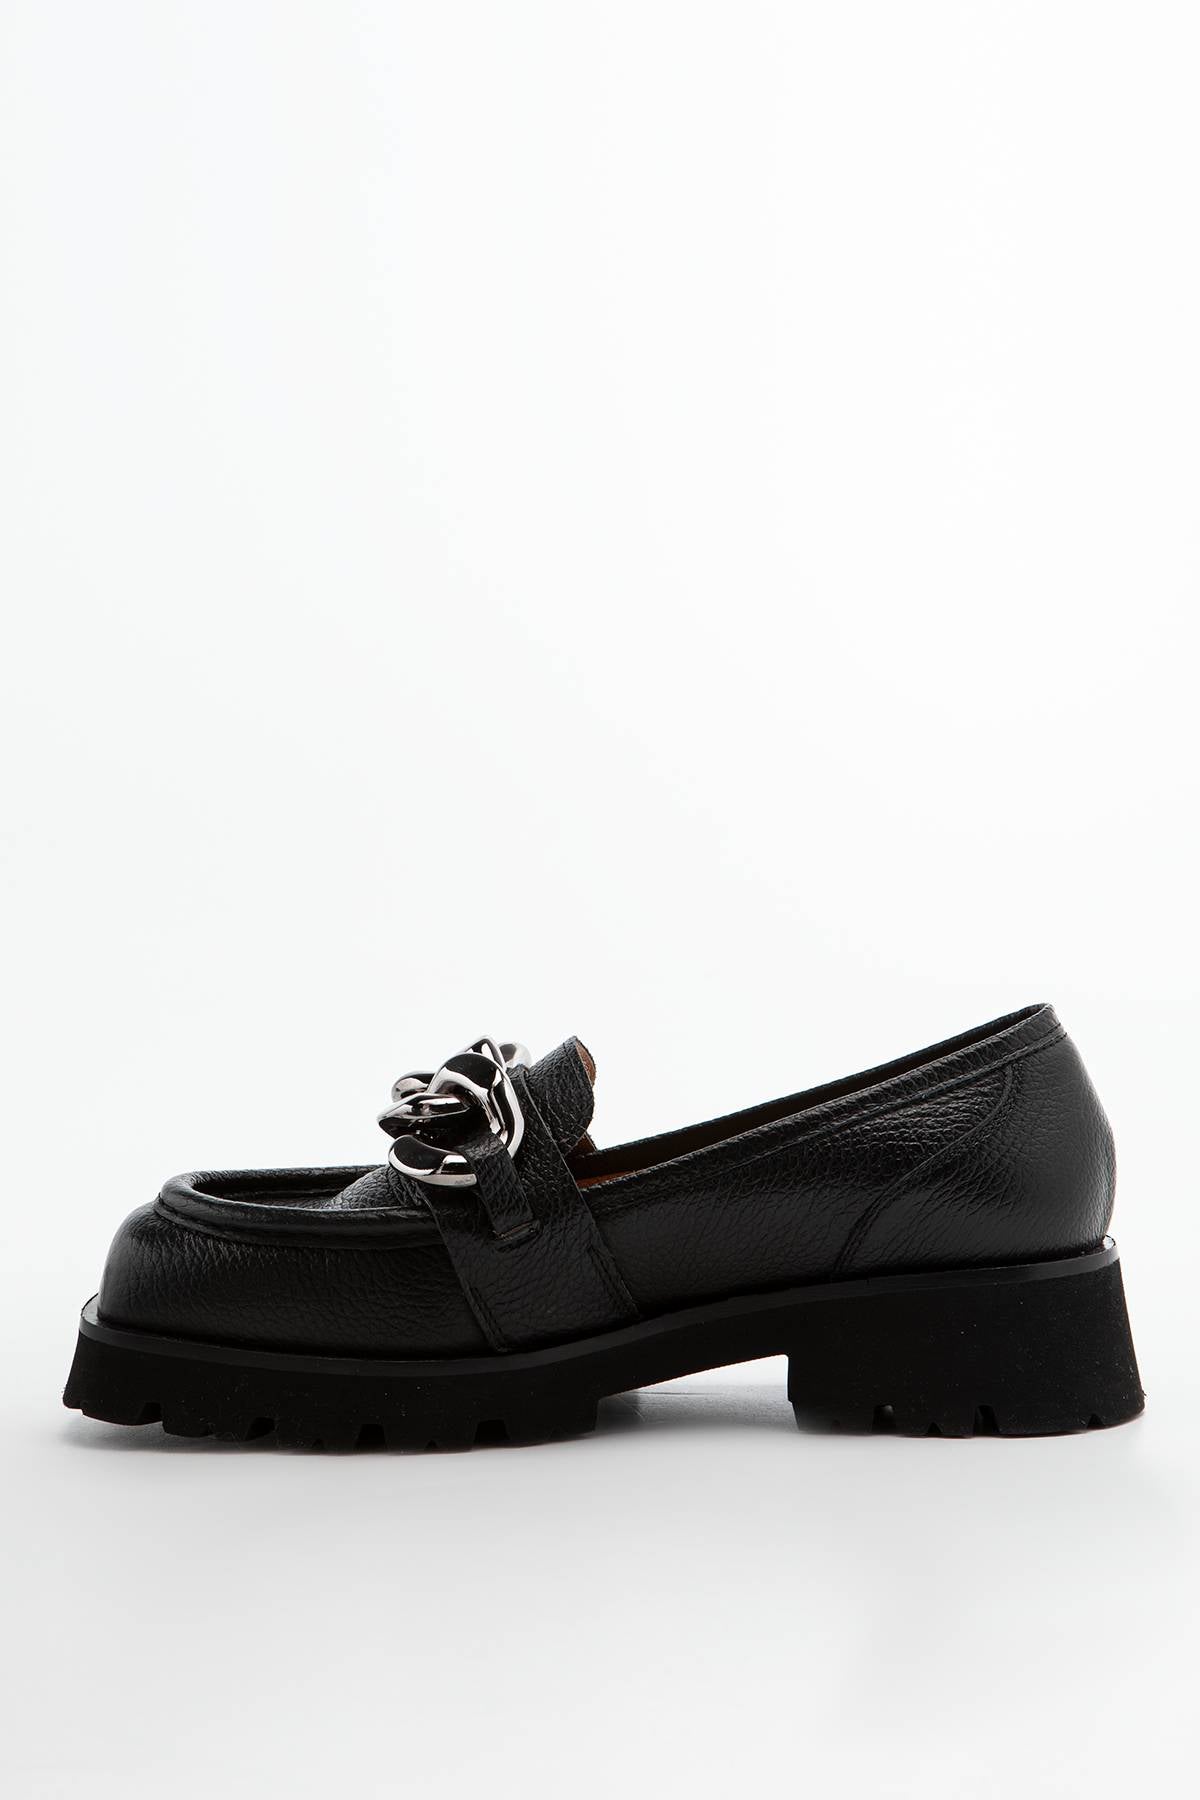 #00016  Charles Footwear slippers Bella Loafer Black - charlesfootwear.com